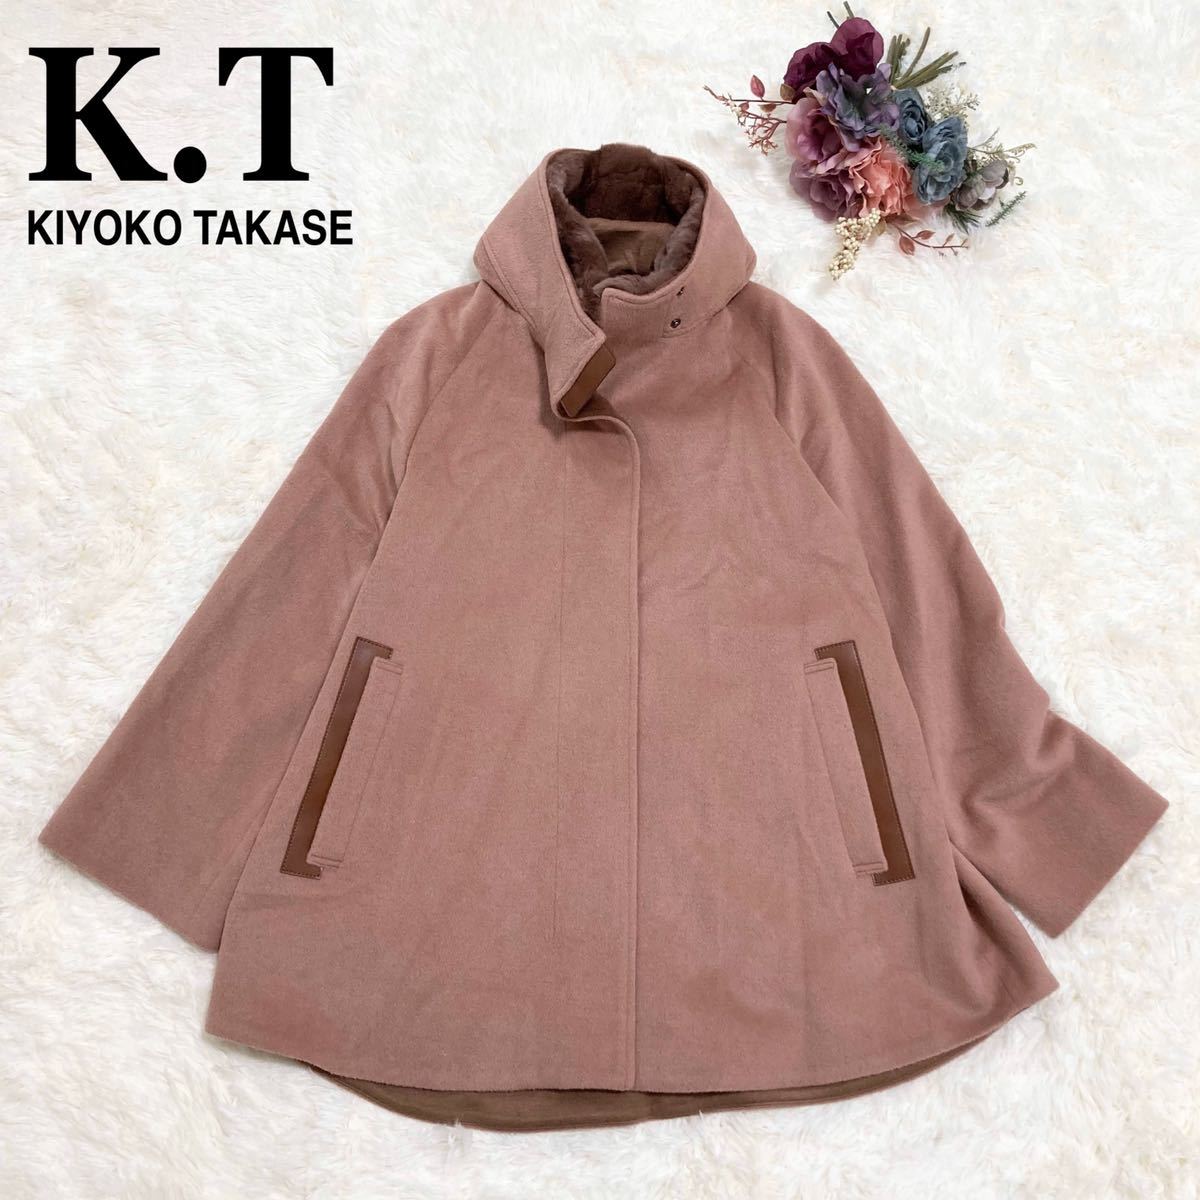 大切な コート キヨコタカセ 【美品】K.T アンゴラ ローズピンク 羊毛